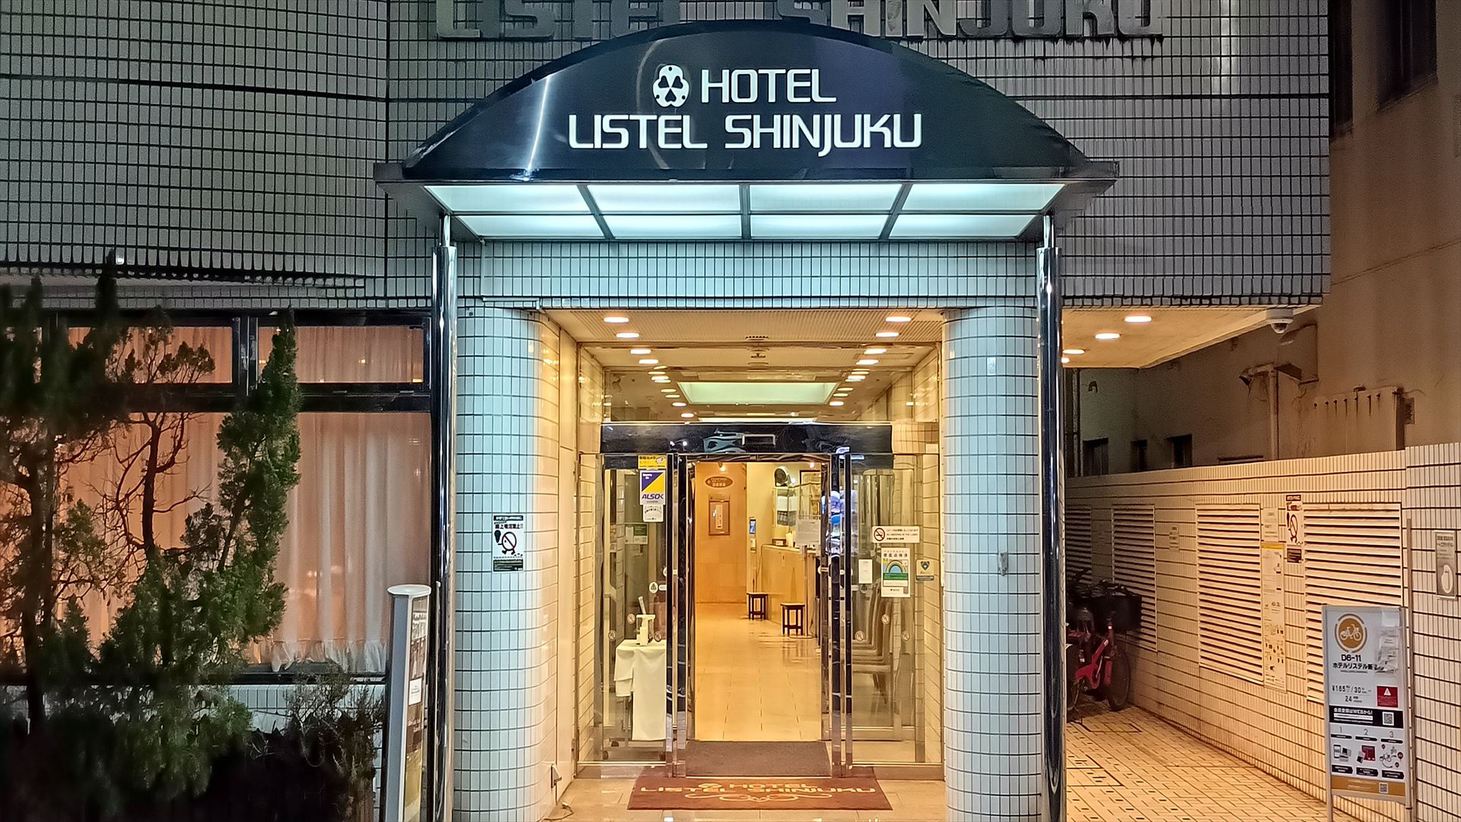 夜行バスで新宿へ、早朝からデイユースできる新宿周辺のおすすめホテルを教えて